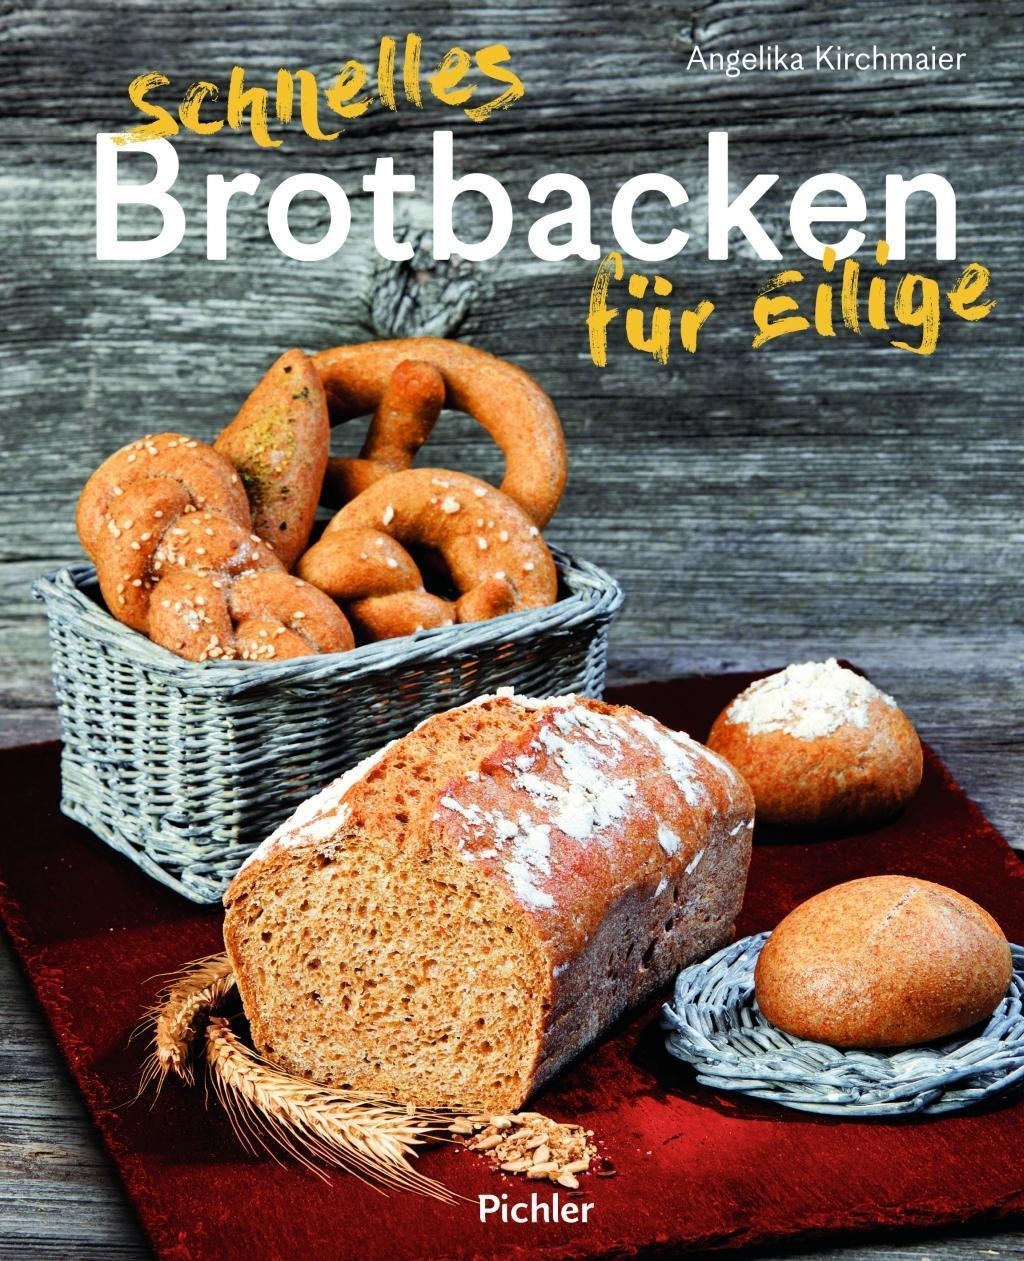 Schnelles Brotbacken Für Eilige - Angelika Kirchmaier  Gebunden